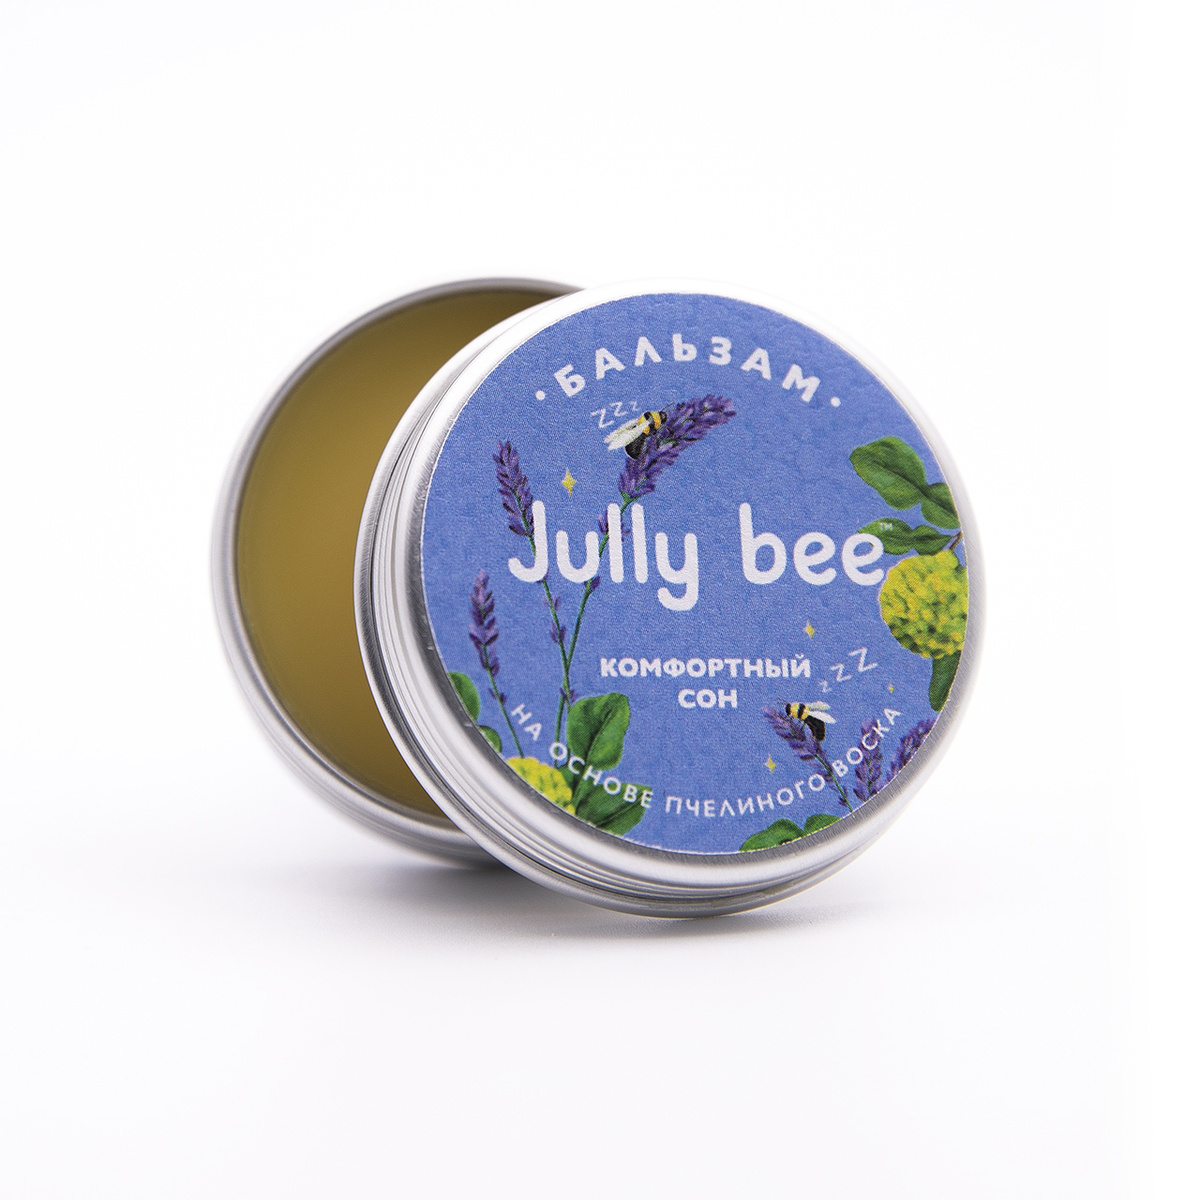 Купить Натуральный Бальзам Jully bee Комфортный сон для улучшения сна с лавандой и мятой 25 мл